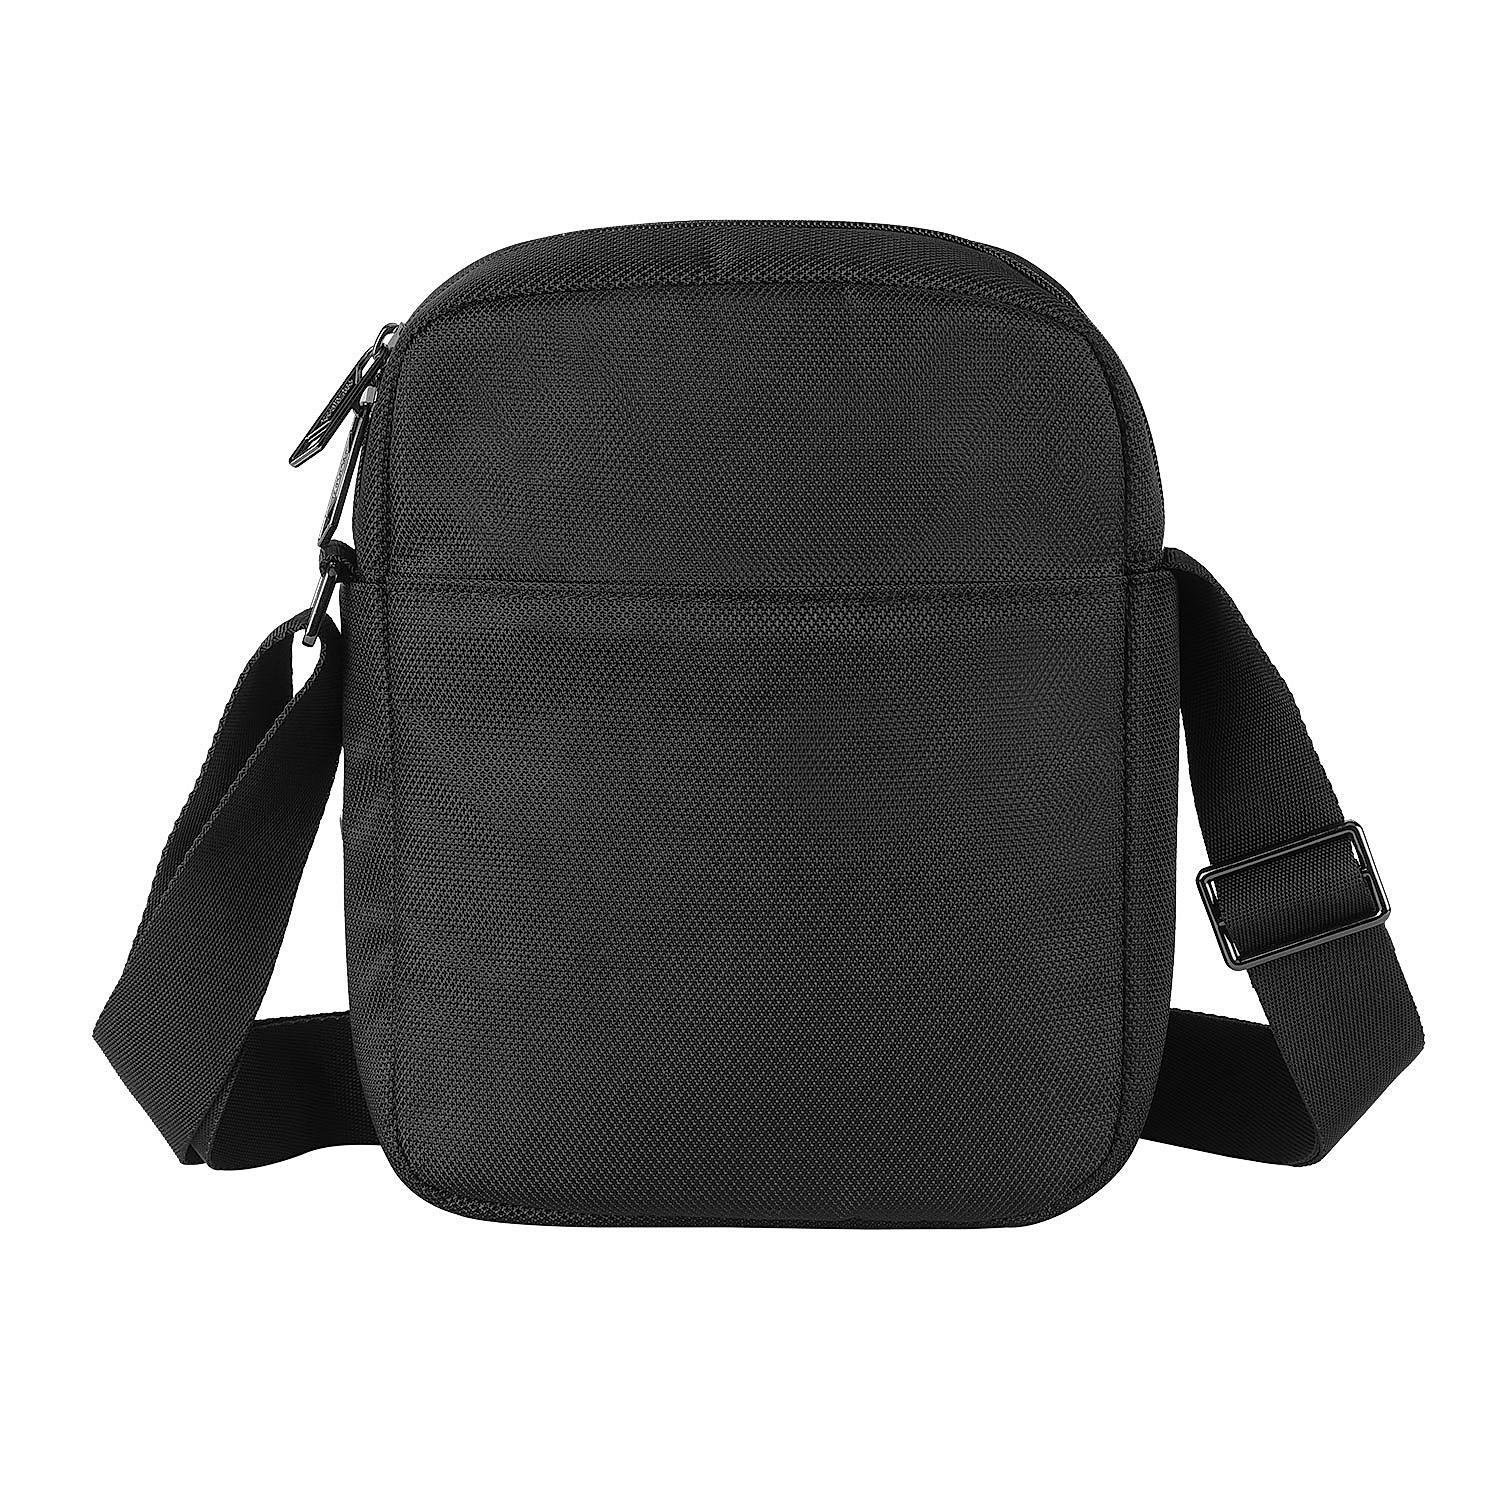 Buy Black Bass Shoulder Bag (21 cm) Online at American Tourister | 521101